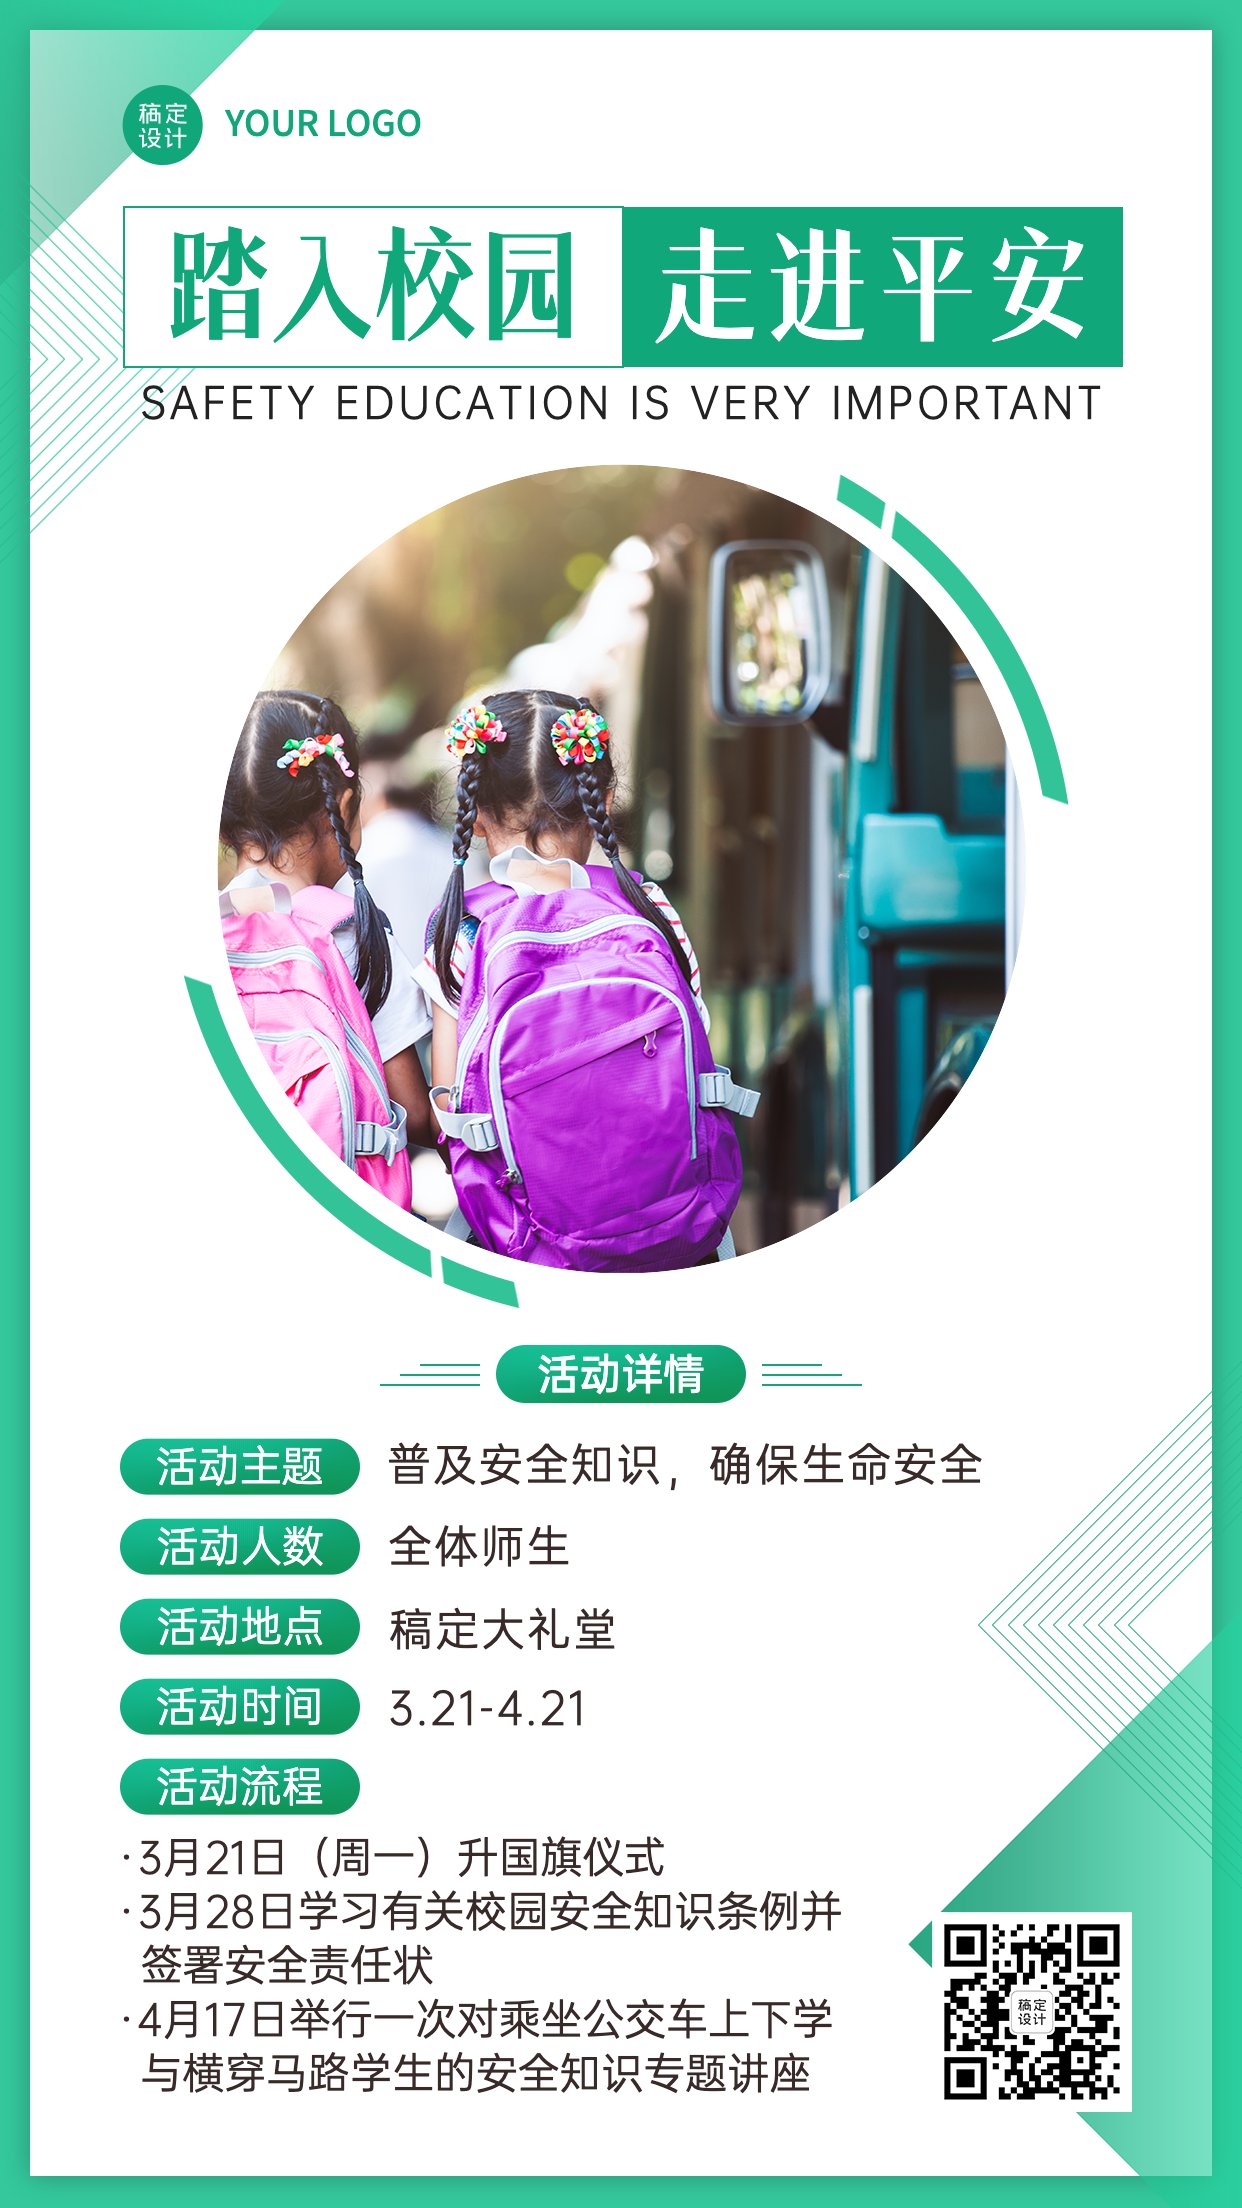 3.28中小学安全教育日节日活动宣传手简约机海报预览效果